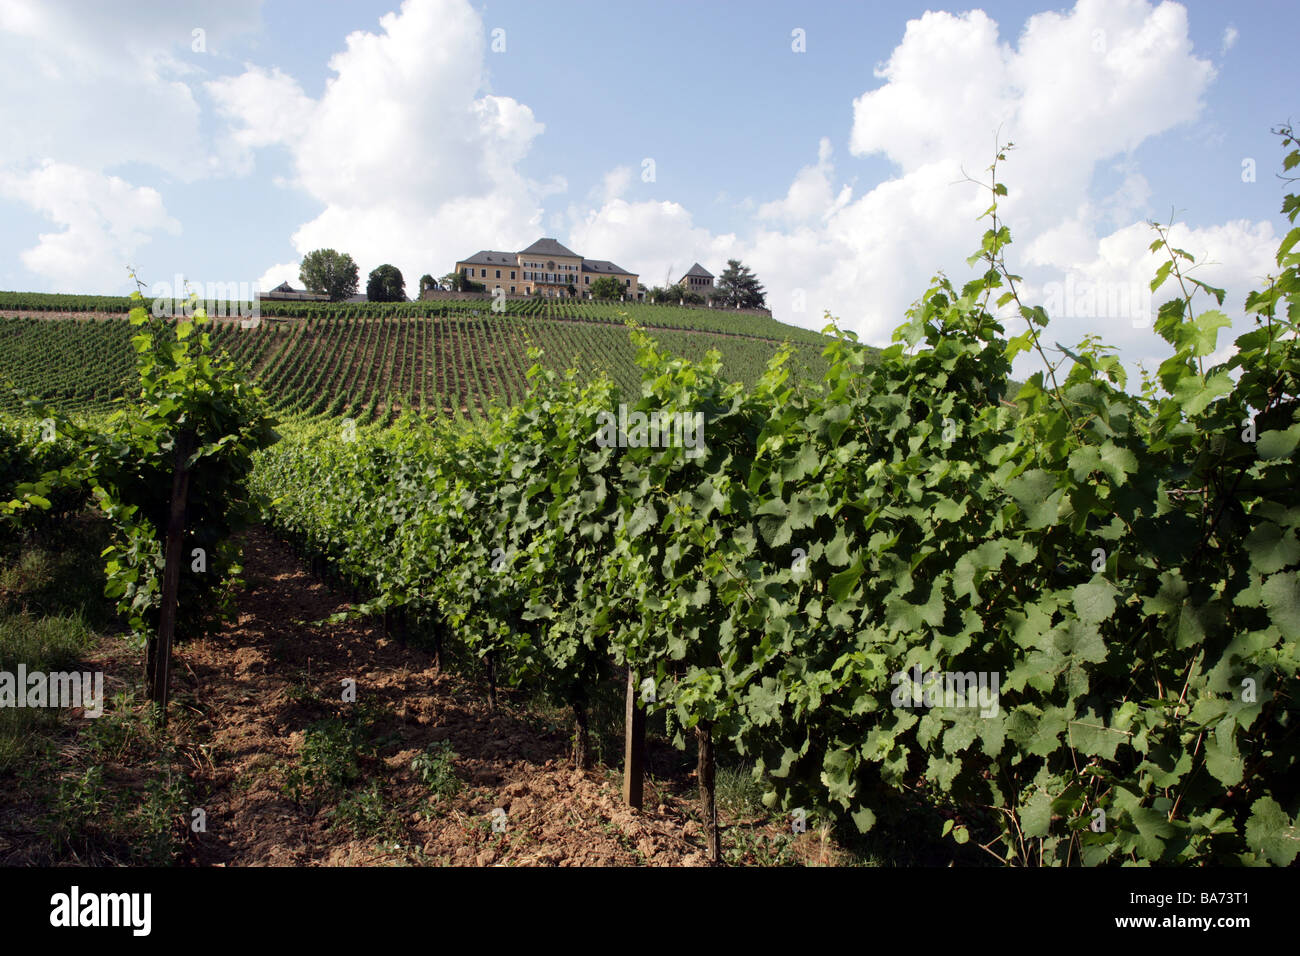 Deutschland-Hessen-Oestrich-Winkel Schloss Johannisberg Wein-Anbaugebiet Europas Rhein 18. Jh. Weingut Reben Reben Landwirtschaft Stockfoto